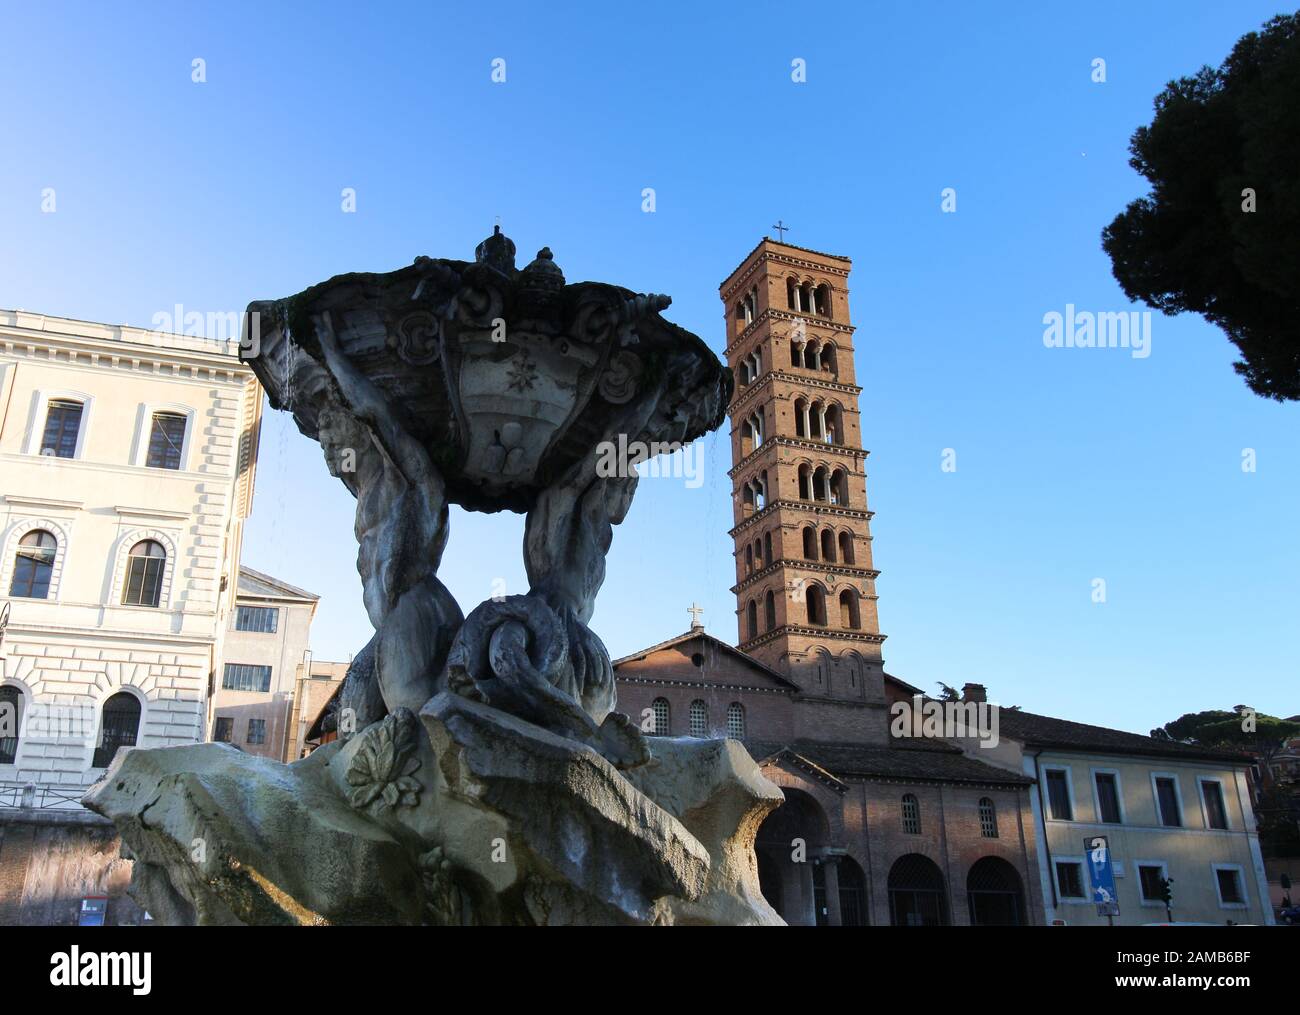 Santa Maria in Cosmedin, Piazza Bocca della Verita in Rome, Italy Stock Photo